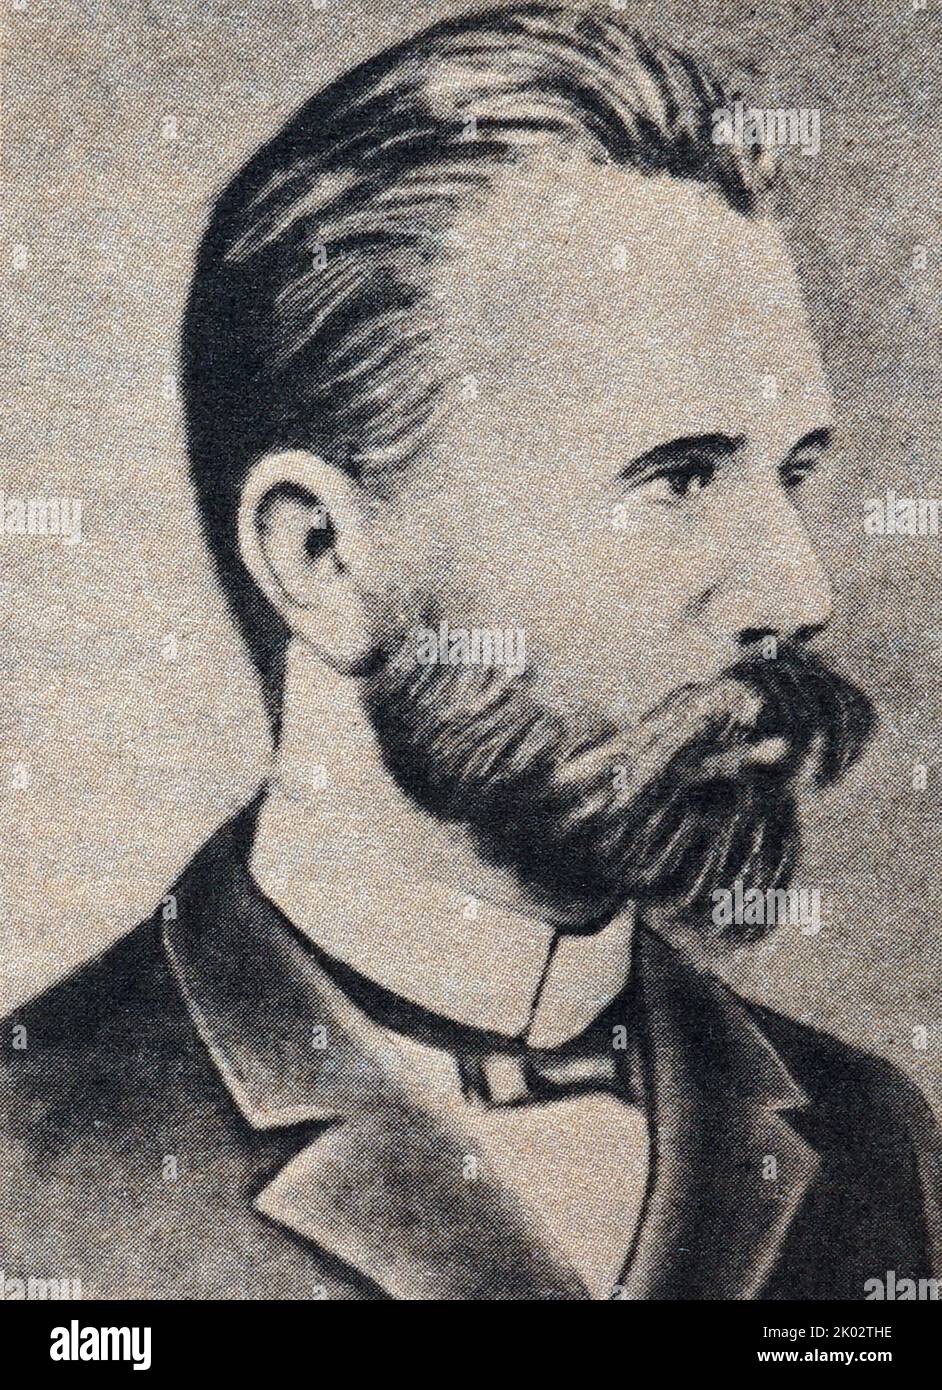 Julian Markhlevsky (1866-1925). Lavoratore del movimento operaio polacco e internazionale. Uno dei fondatori del Partito Comunista Polacco. Dal 1918, visse e lavorò principalmente nella Russia sovietica. Foto Stock